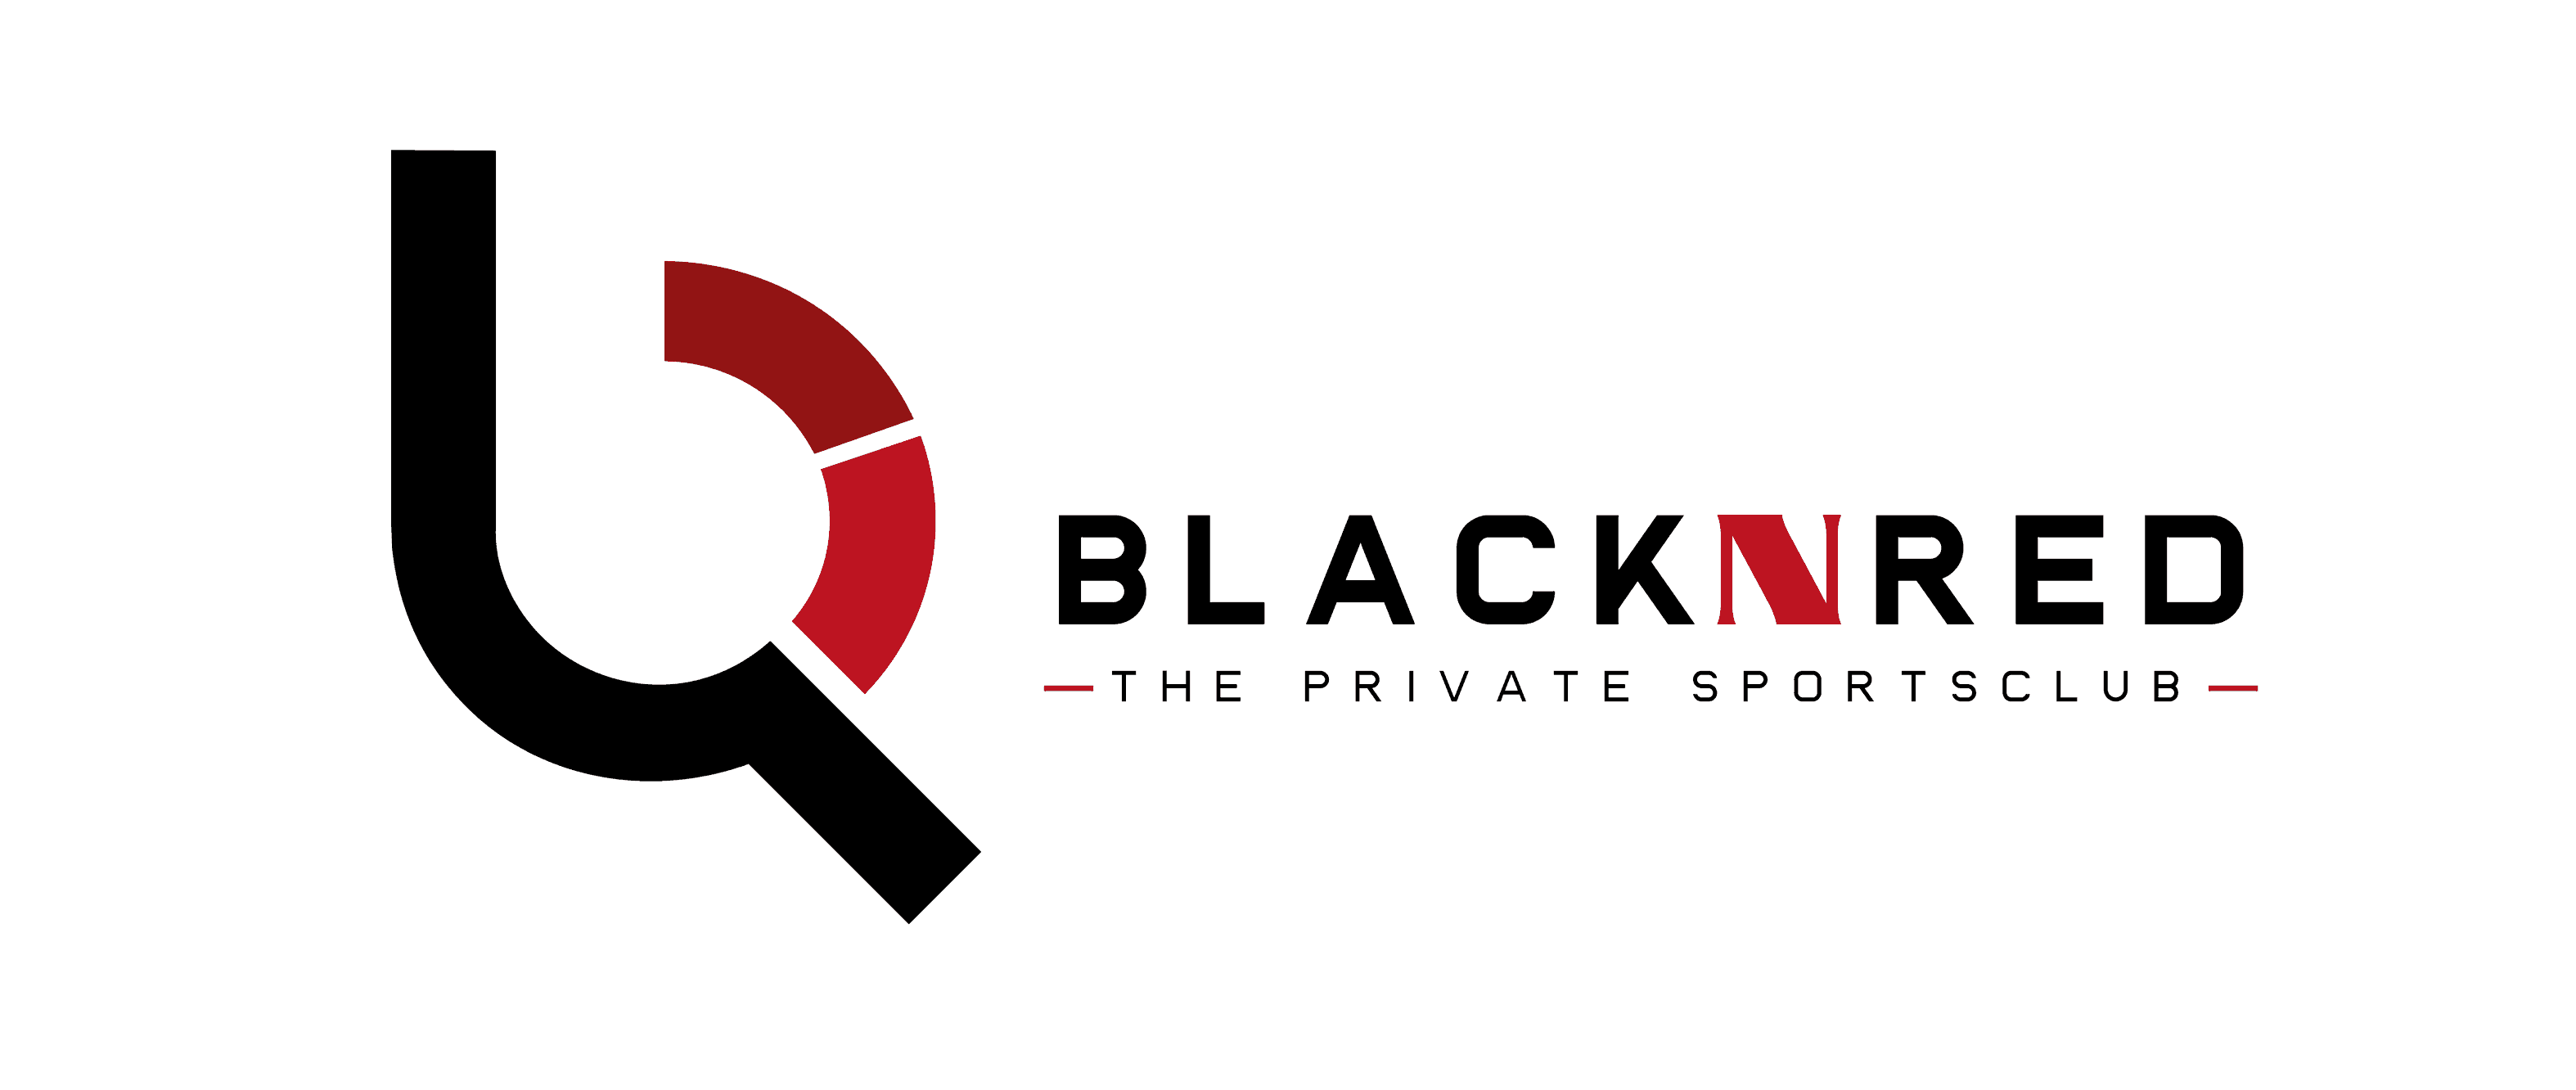 BlacknRed - The Private Sportsclub